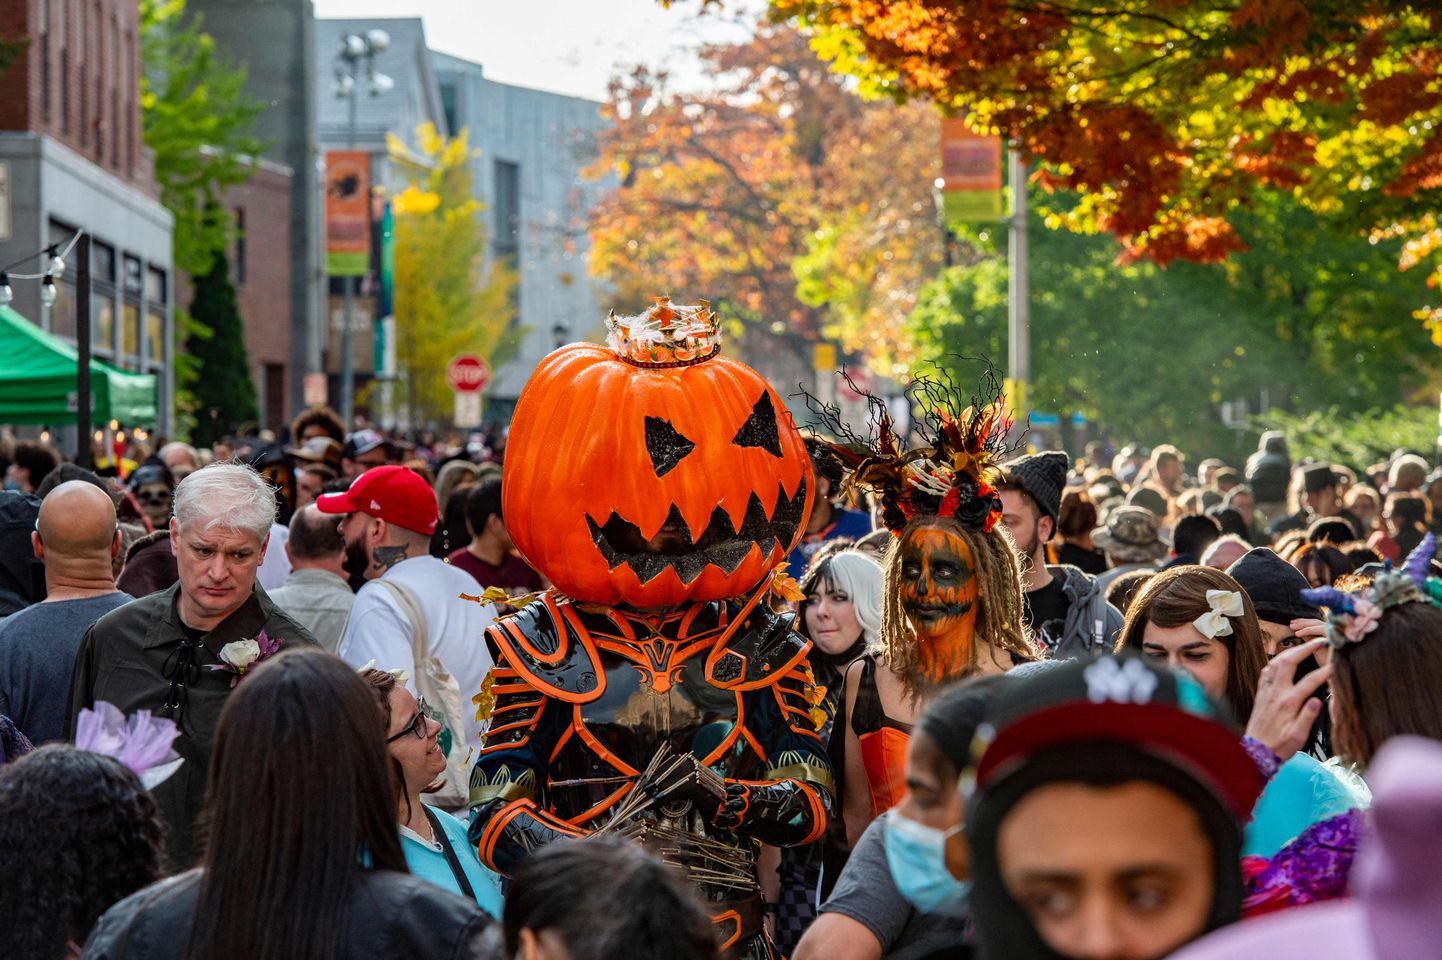 31. oktoobri halloweeni pidustused Salemis, Massachusettsi osariigis USAs. Salemis leidsid 1690ndatel aset kurikuulsad nõiaprotsessid ning nüüdisajal peetakse seda tänapäevade nõidade ning halloweeni austajate pühapaigaks.